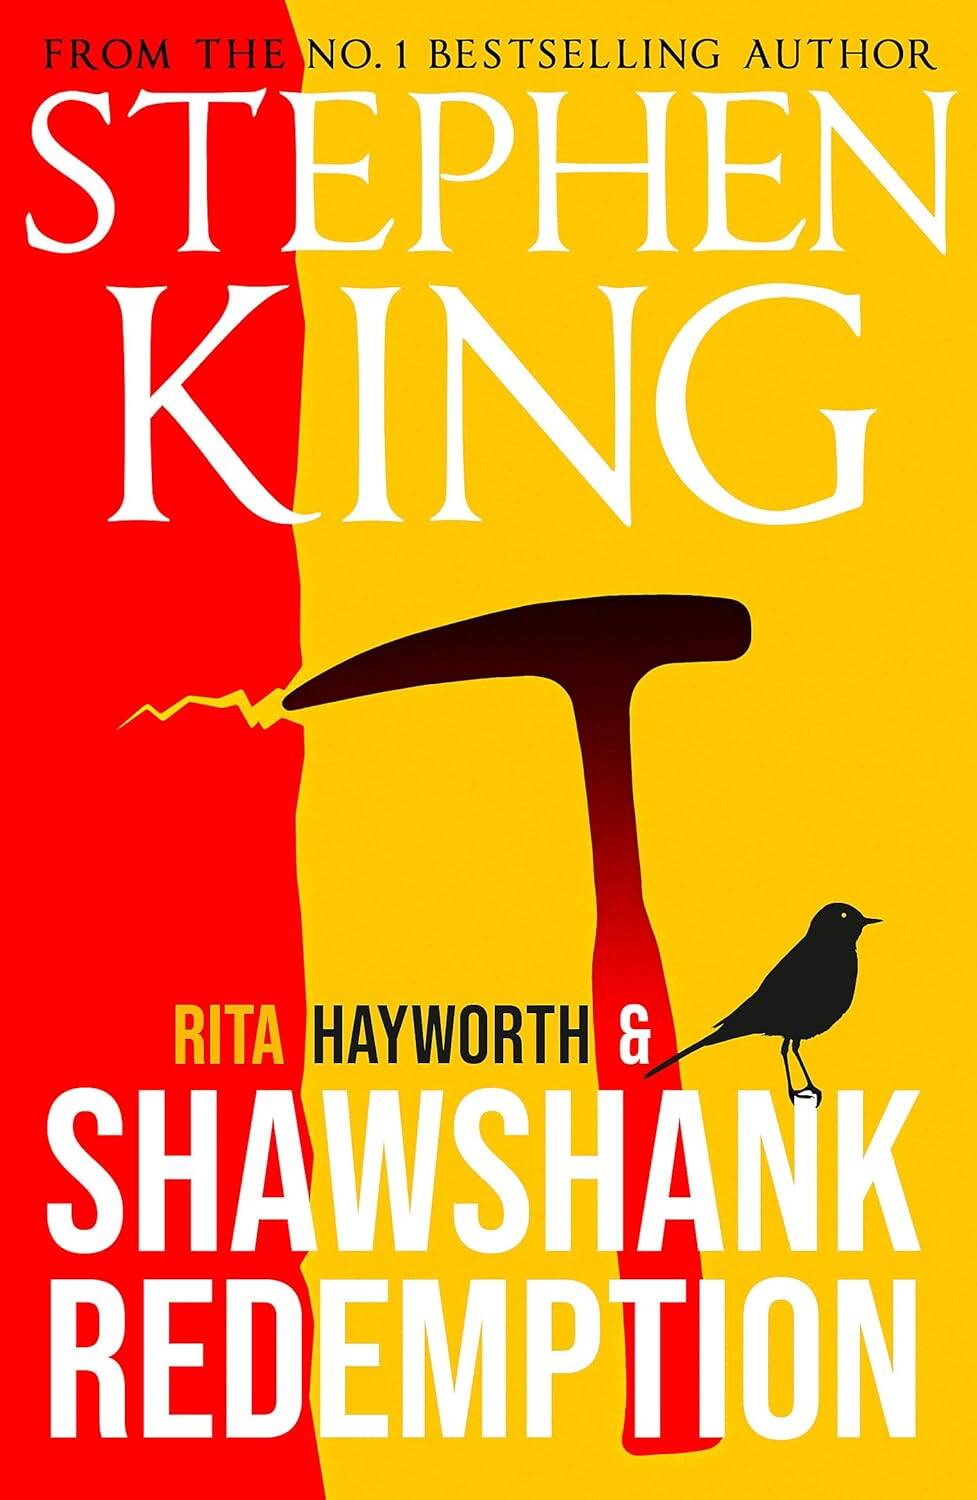 Rita Hayworth and Shawshank Redemption (Stephen King)       ( ) /    